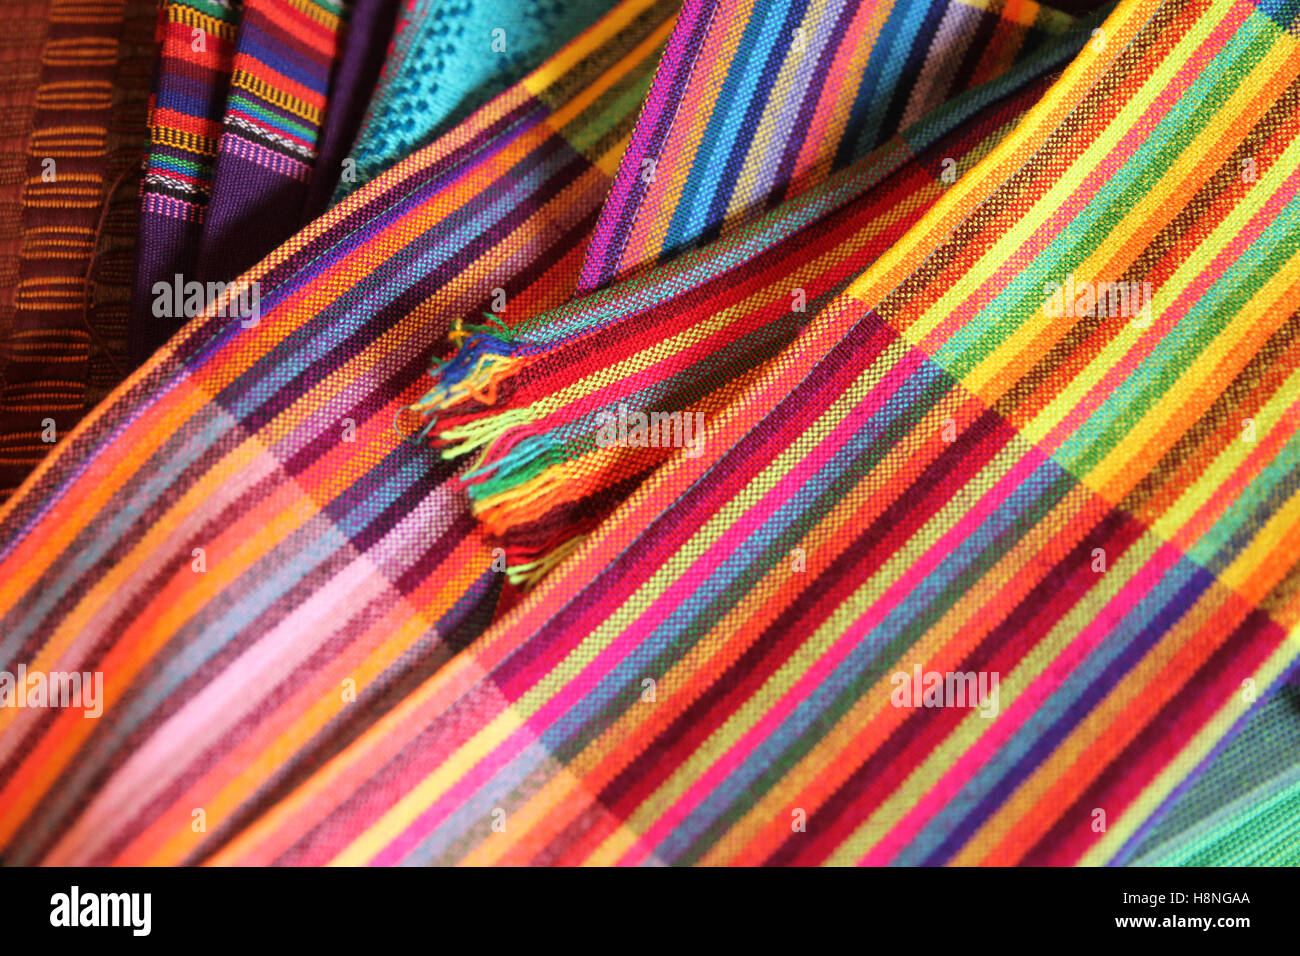 Collezione di tessuti che sono tradizionali prodotti tessili provenienti dal Messico e America centrale, Cozumel, Quintana Roo, Messico. Foto Stock